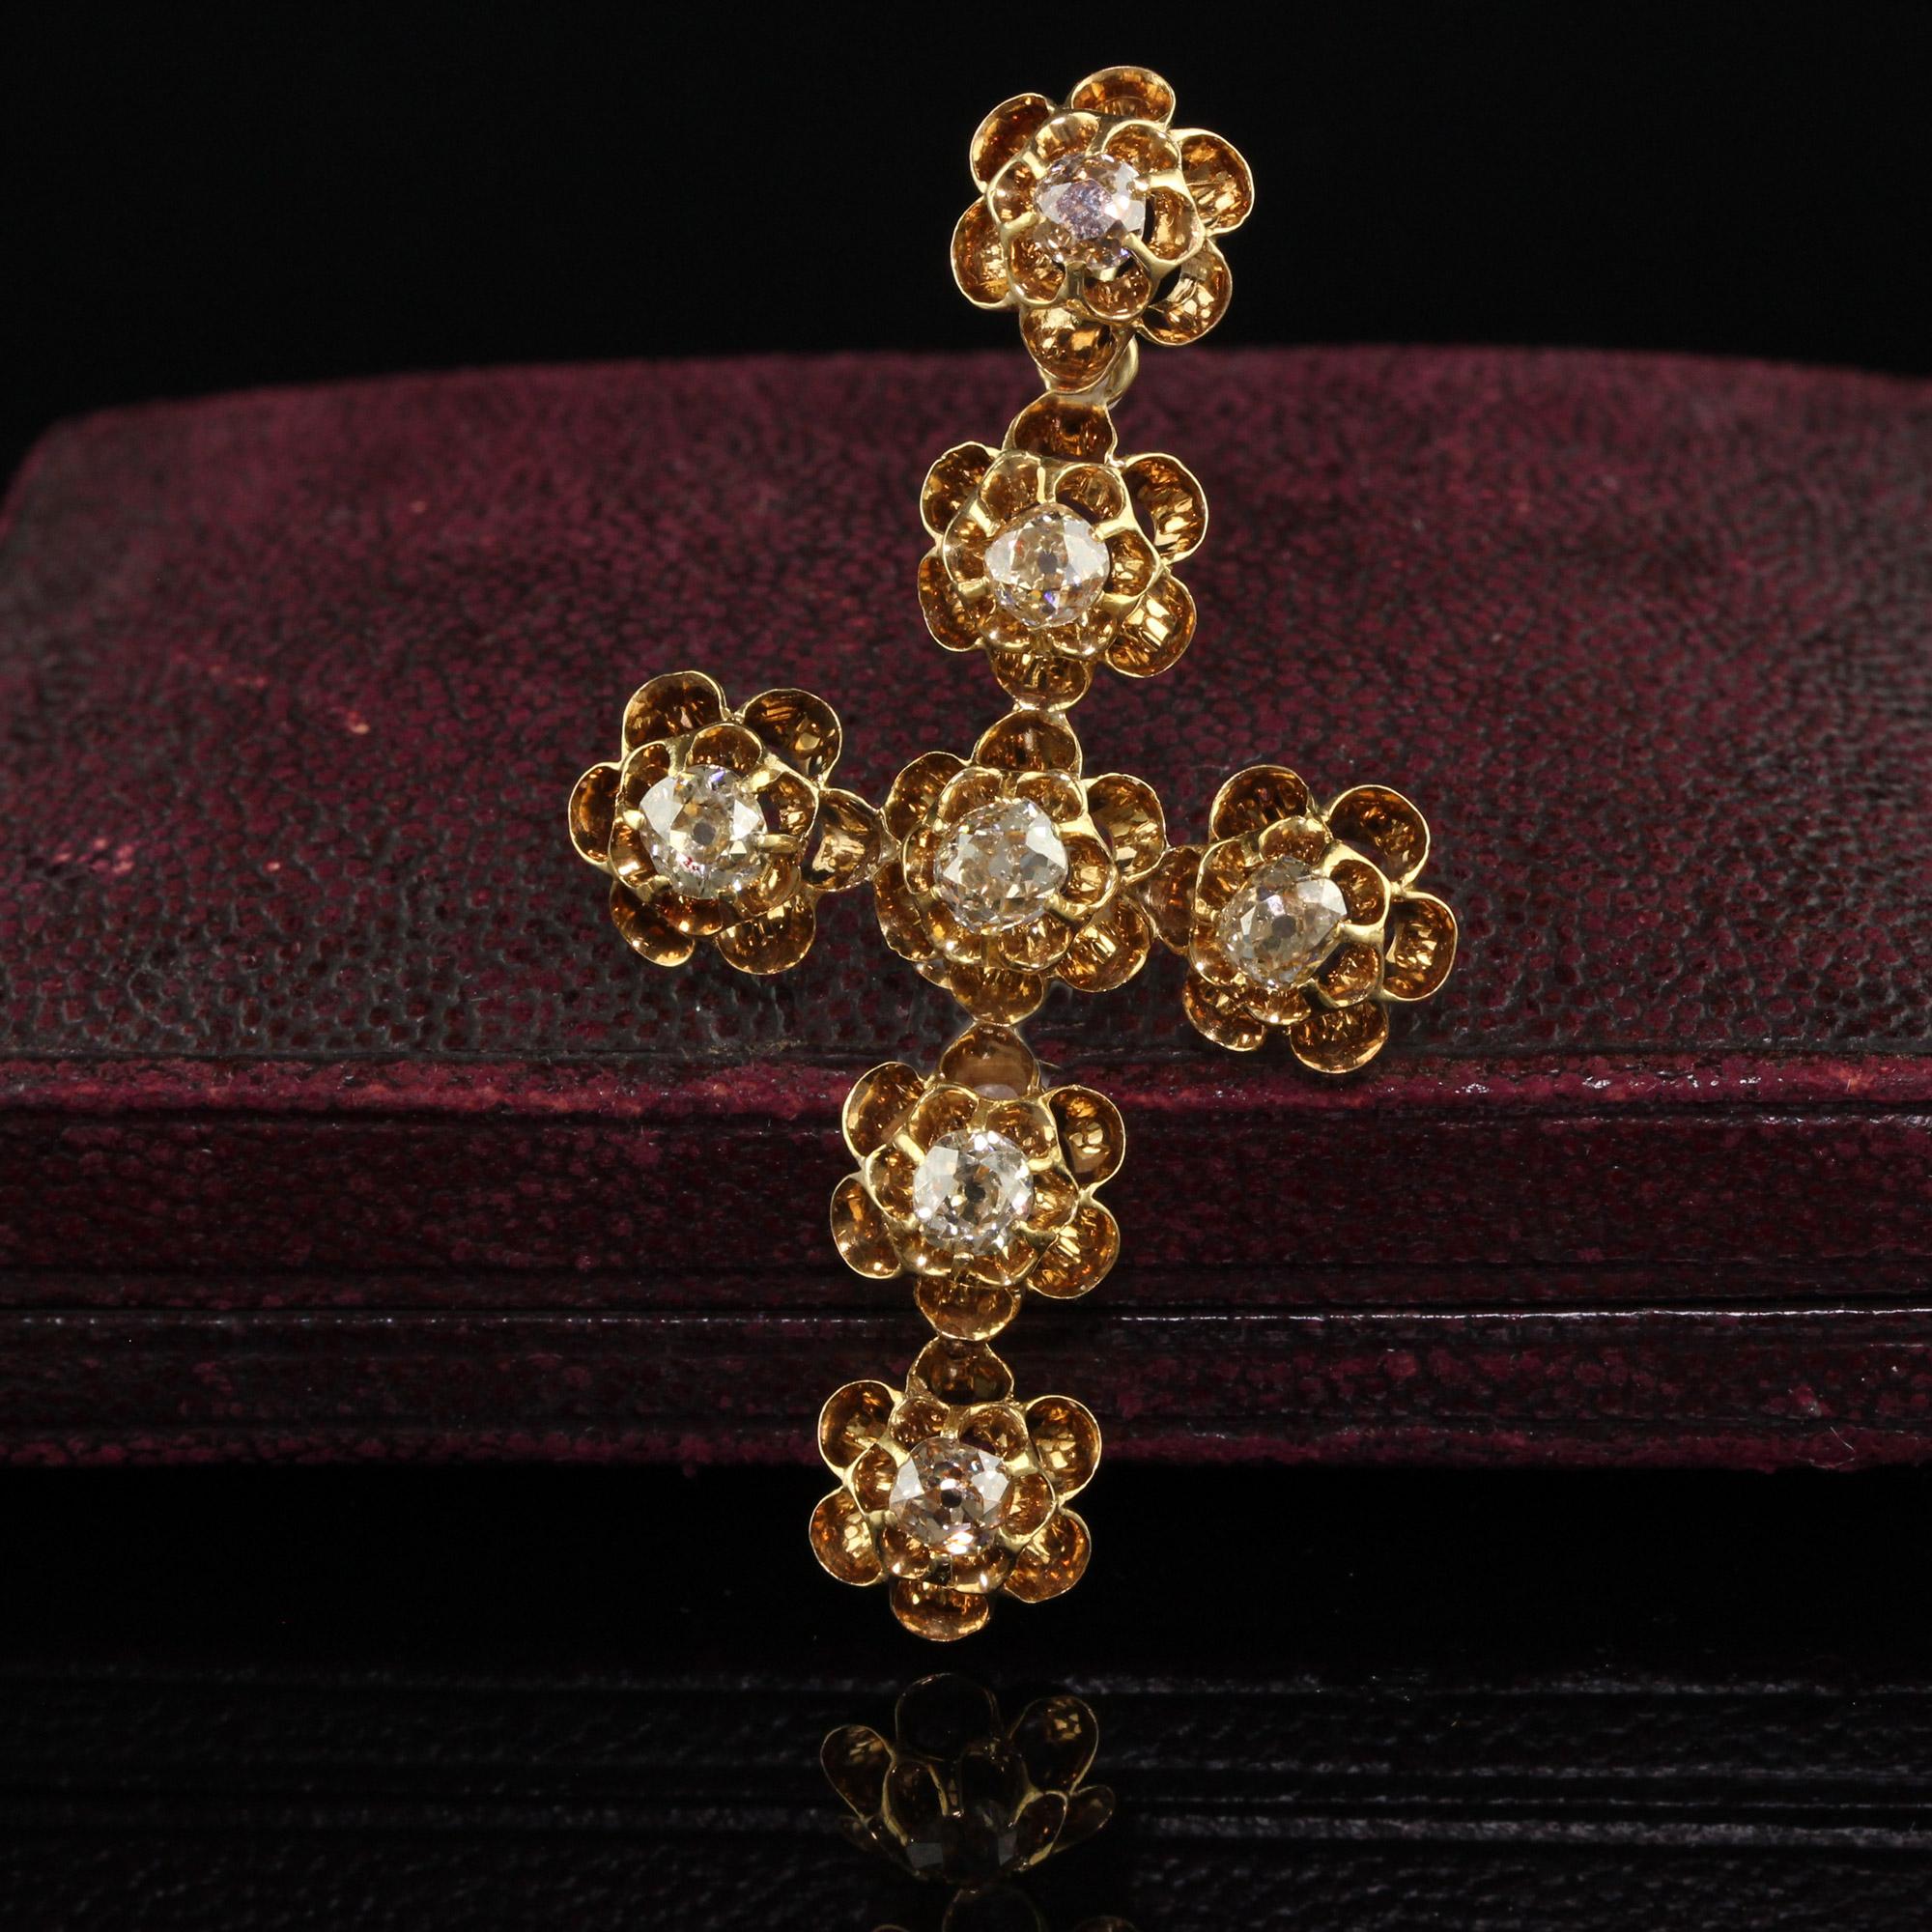 Schöne antike viktorianische 18K Gelbgold Old Mine Diamond Floral Cross. Dieser prächtige viktorianische Anhänger ist aus 18 Karat Gelbgold gefertigt. Das Kreuz ist mit 7 Diamanten im Altminenschliff besetzt, die in ein wunderschönes Blumenkreuz